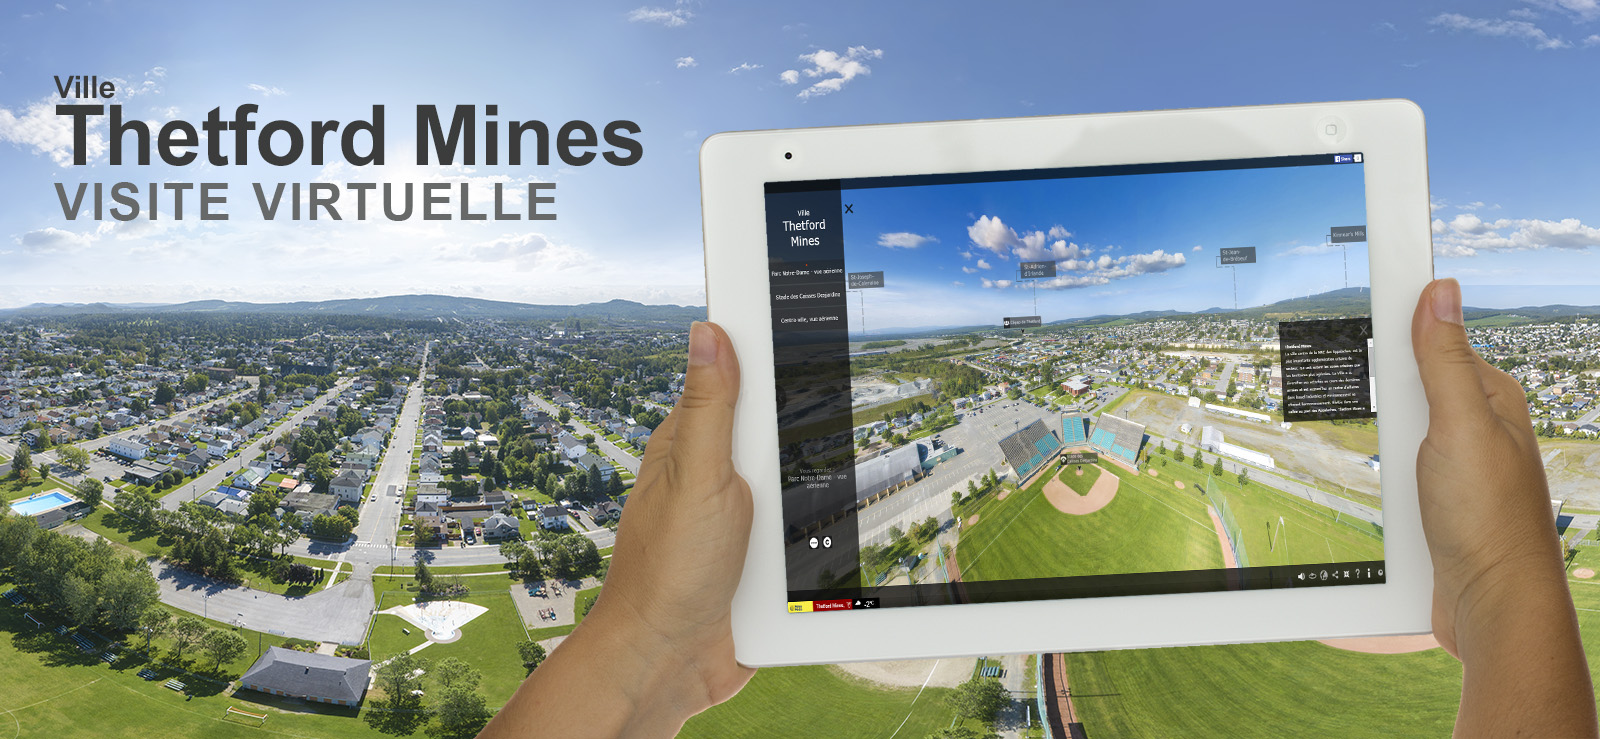 Visite virtuelle 360 degrés Thetford Mines